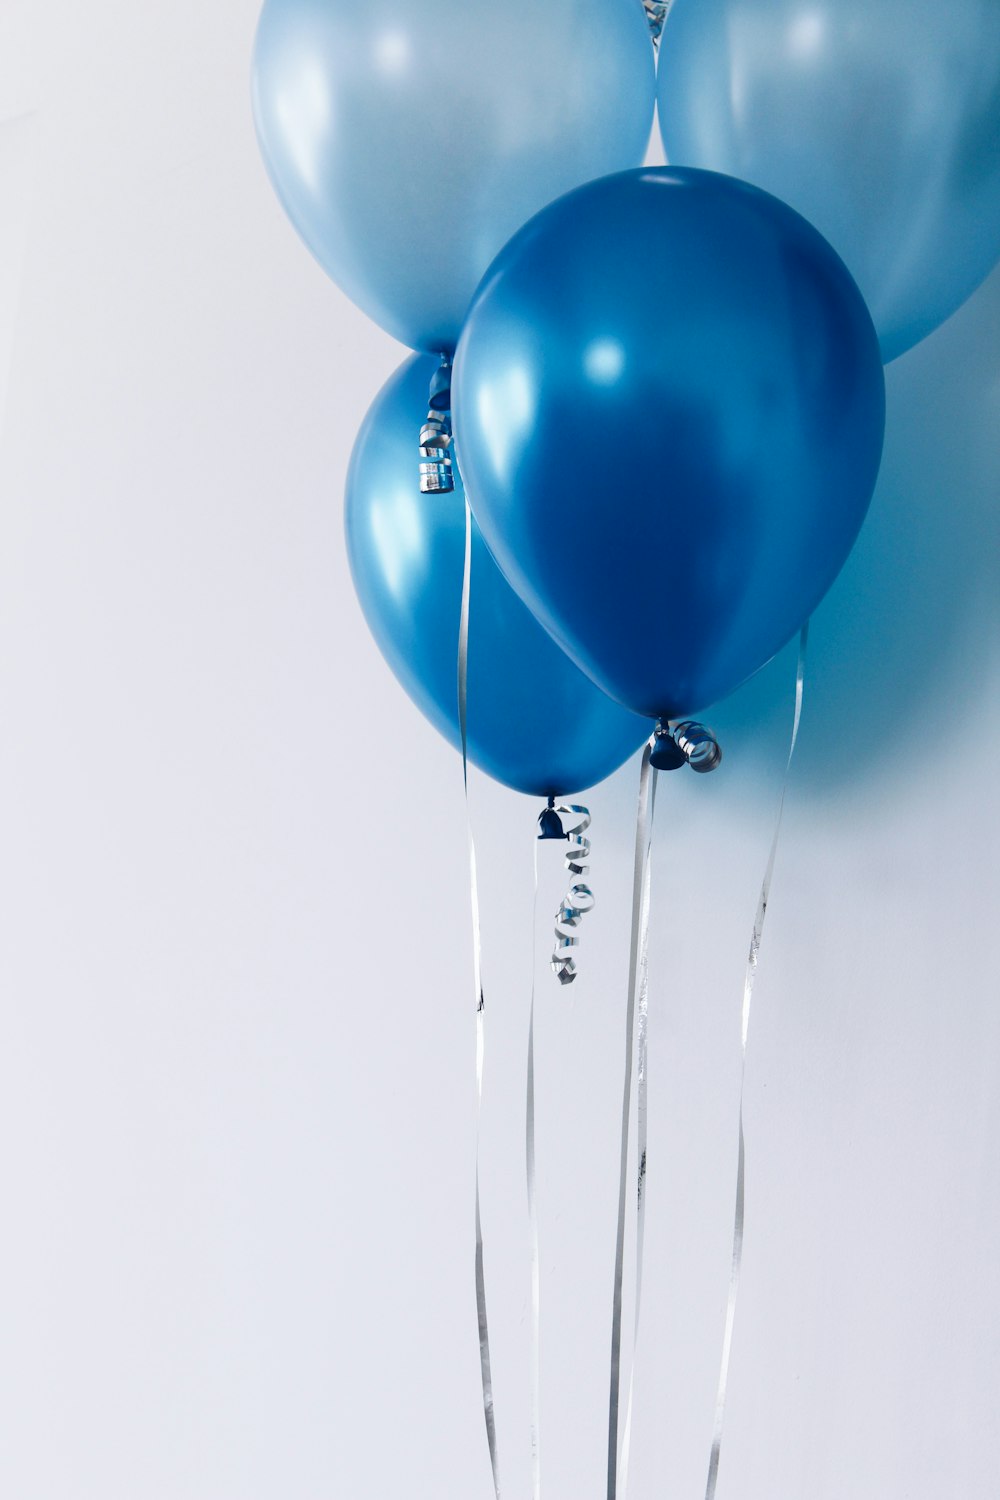 четыре синих воздушных шара возле белой стены